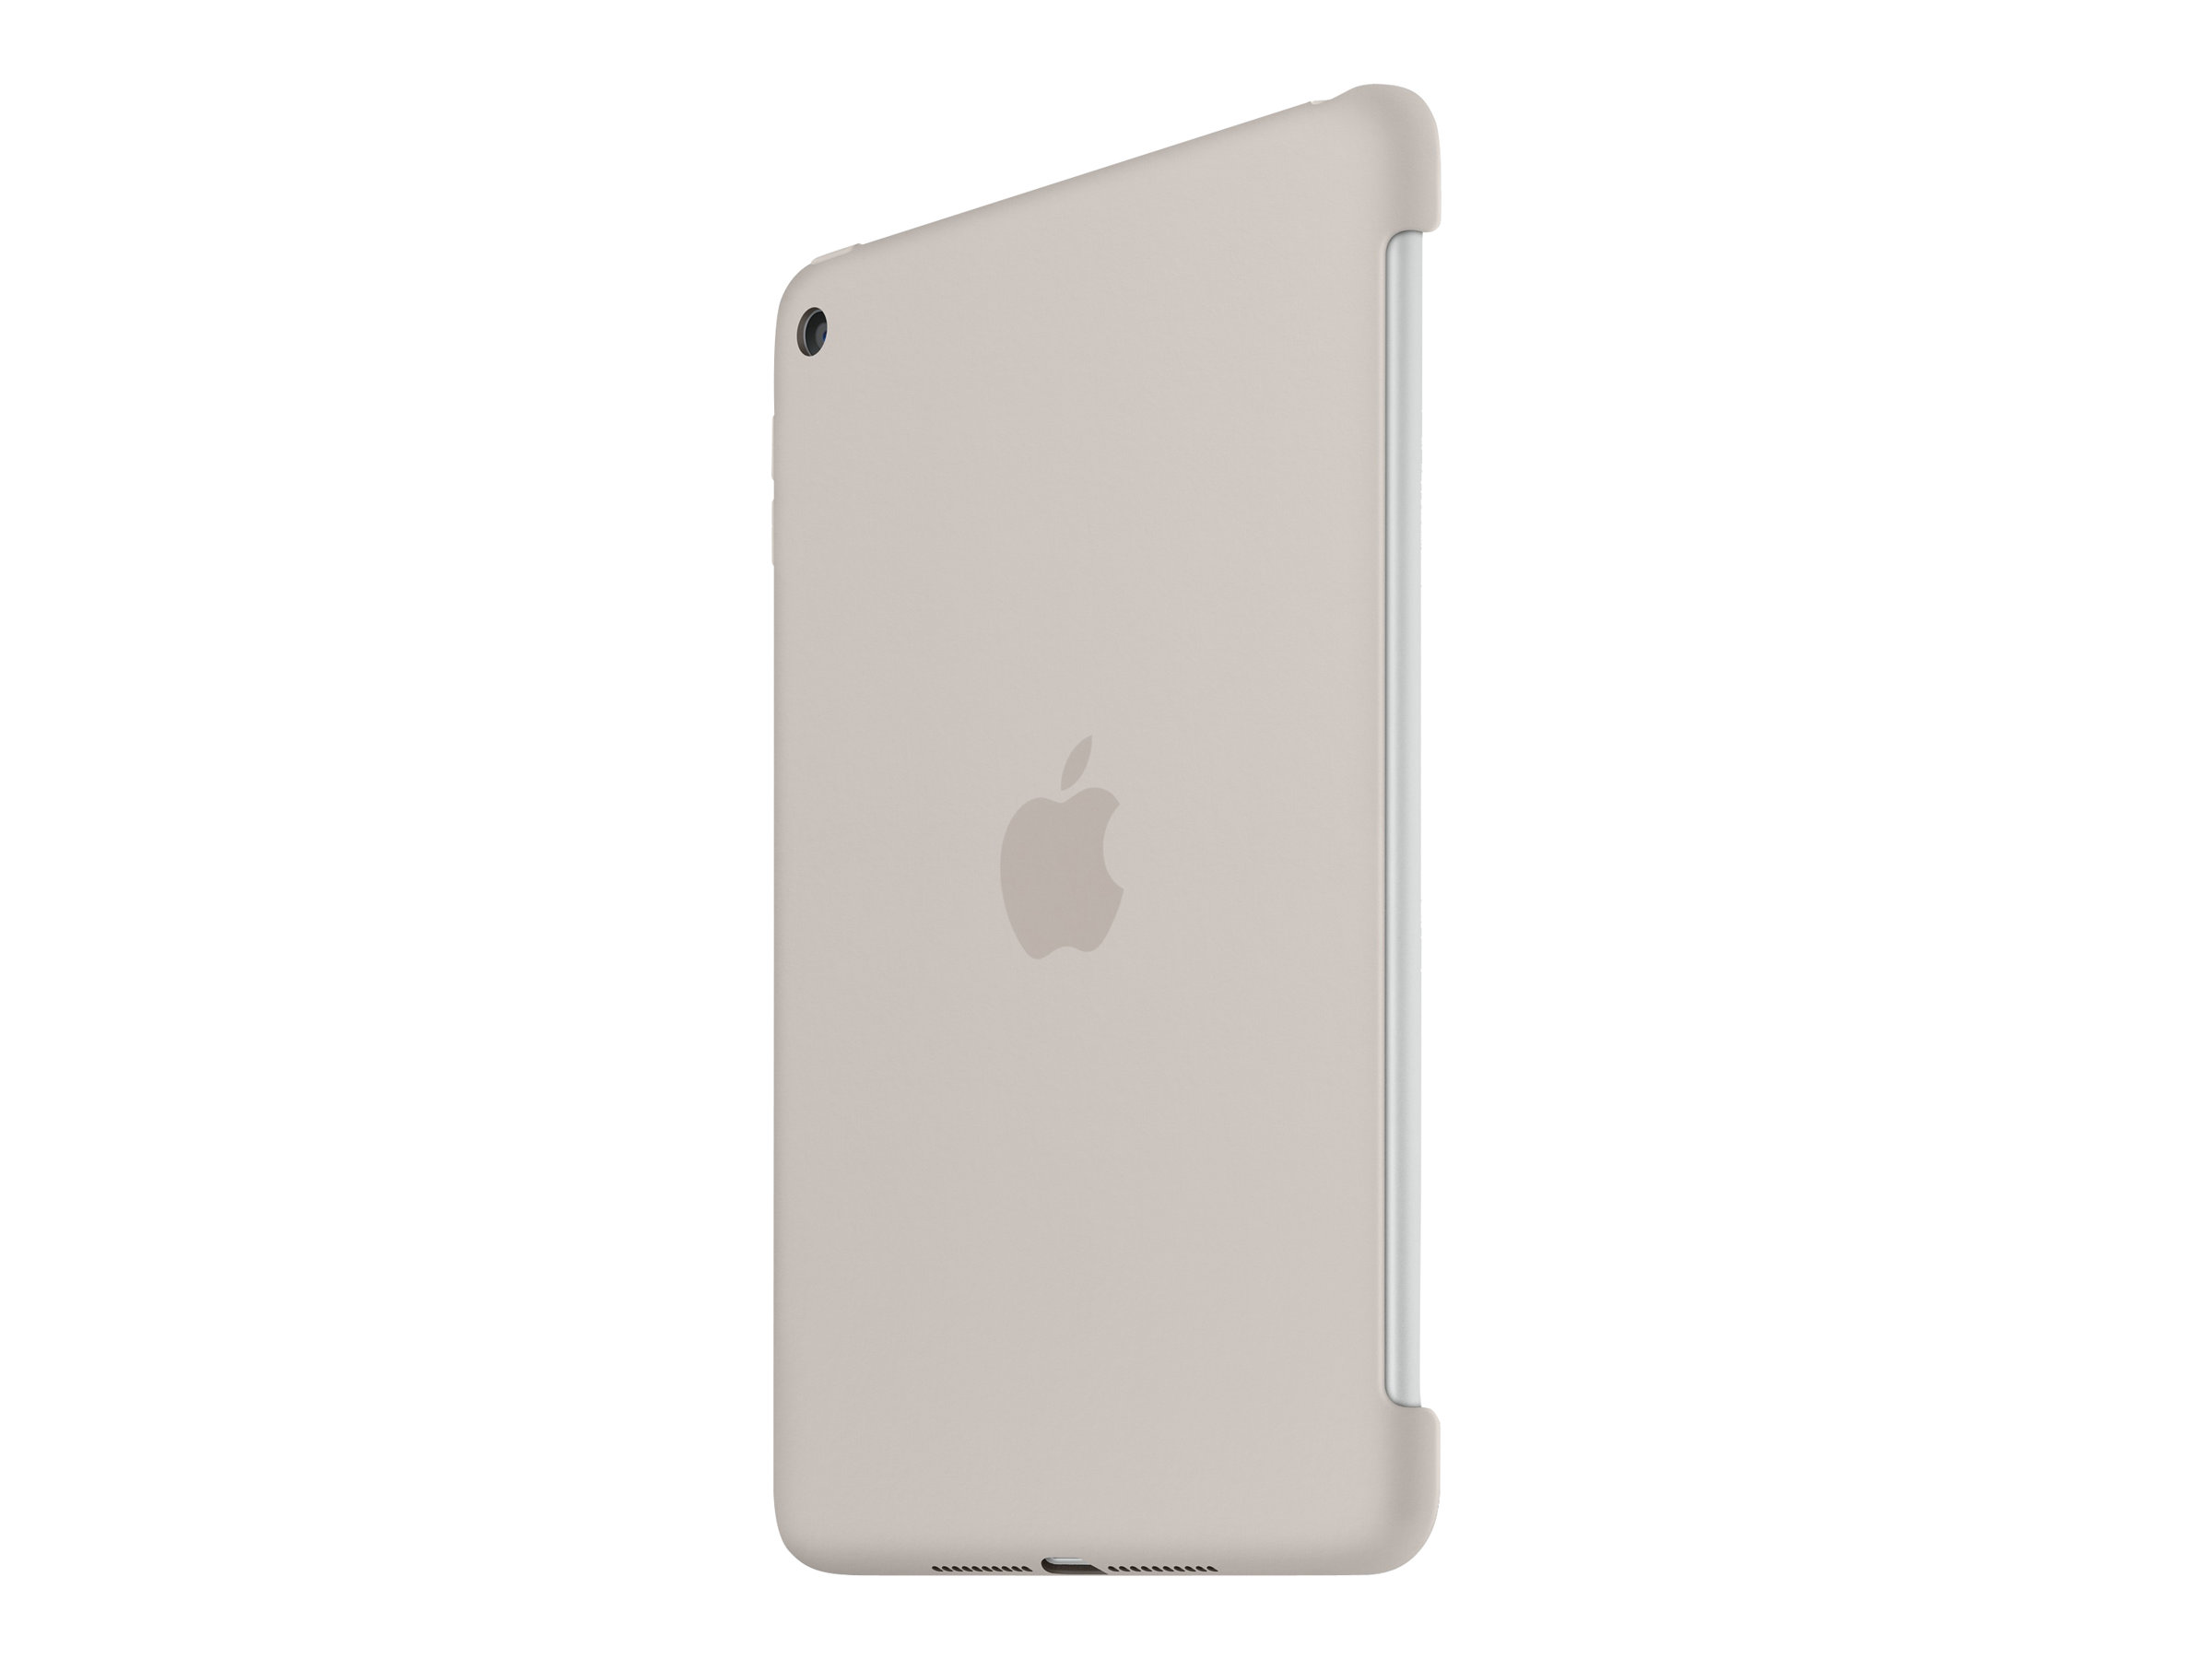 Apple iPad mini 4 Silicone Case, Stone - image 2 of 5